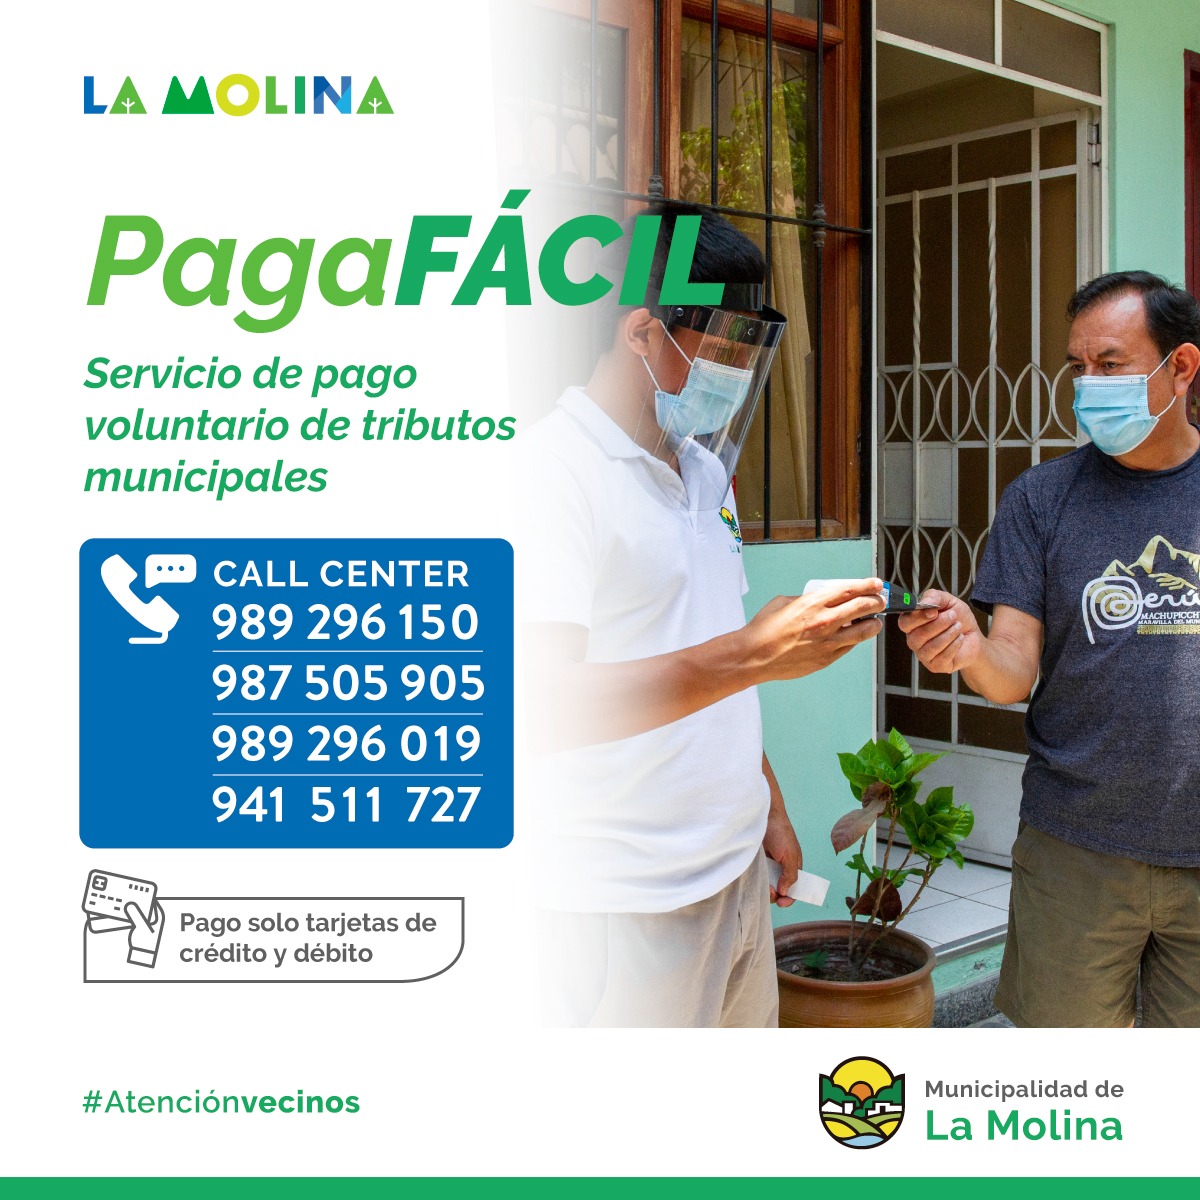 PAGA FÁCIL  Vecino molinense, recuerda que con nuestro programa Paga Fácil puedes realizar el pago de los tributos municipales sin salir de casa. Las unidades móviles llegarán a tu domicilio.